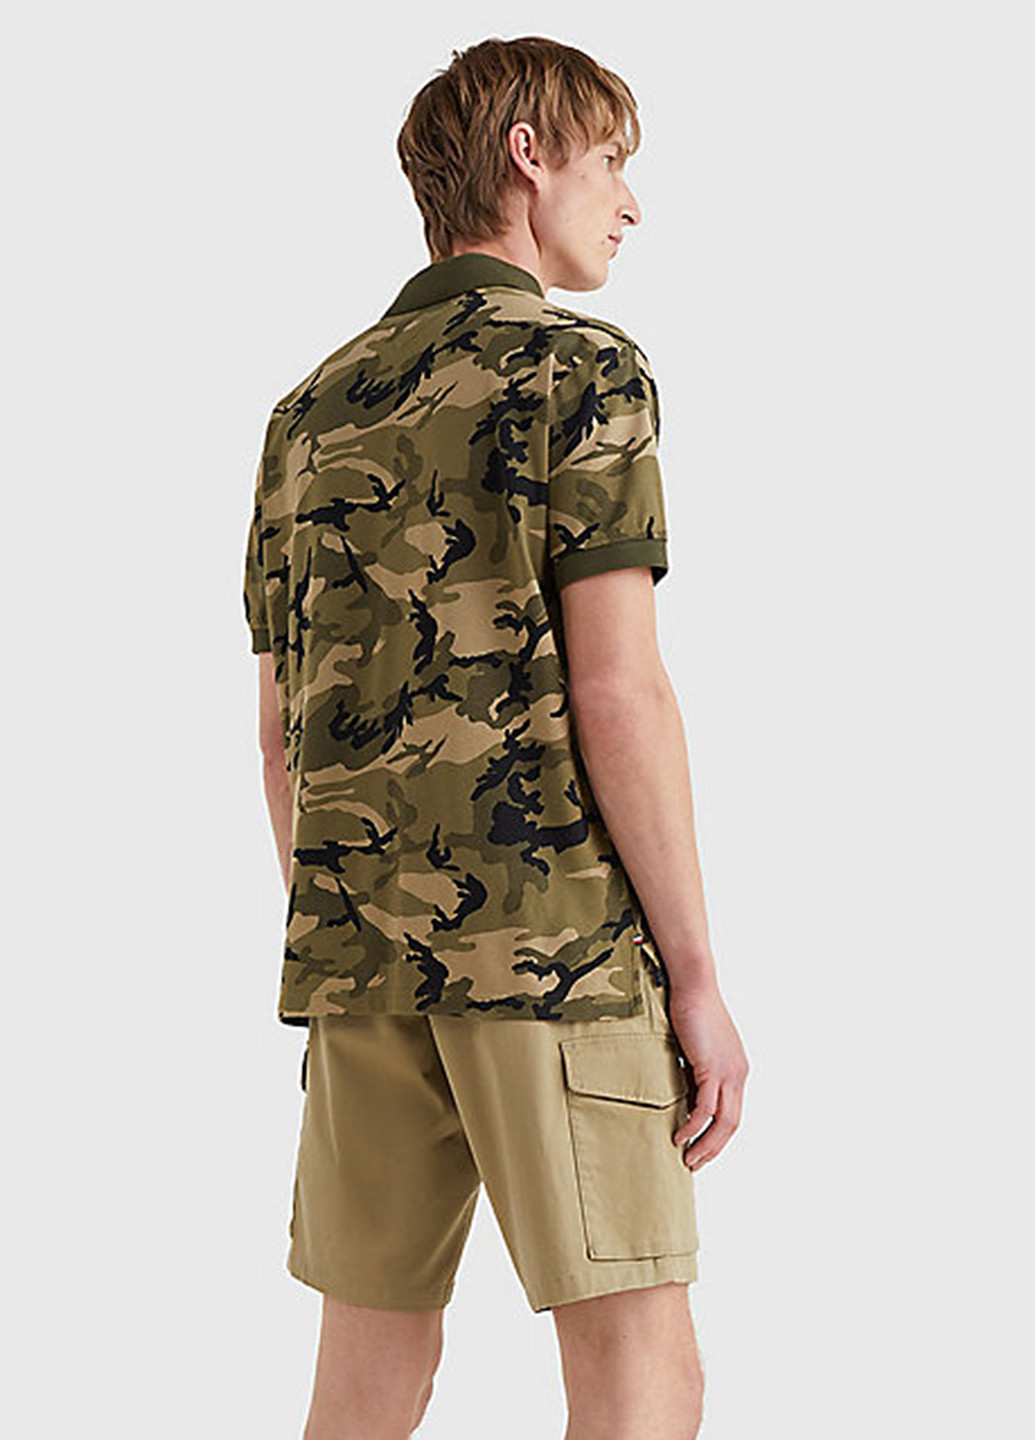 Оливковая (хаки) футболка-поло для мужчин Tommy Hilfiger с камуфляжным принтом